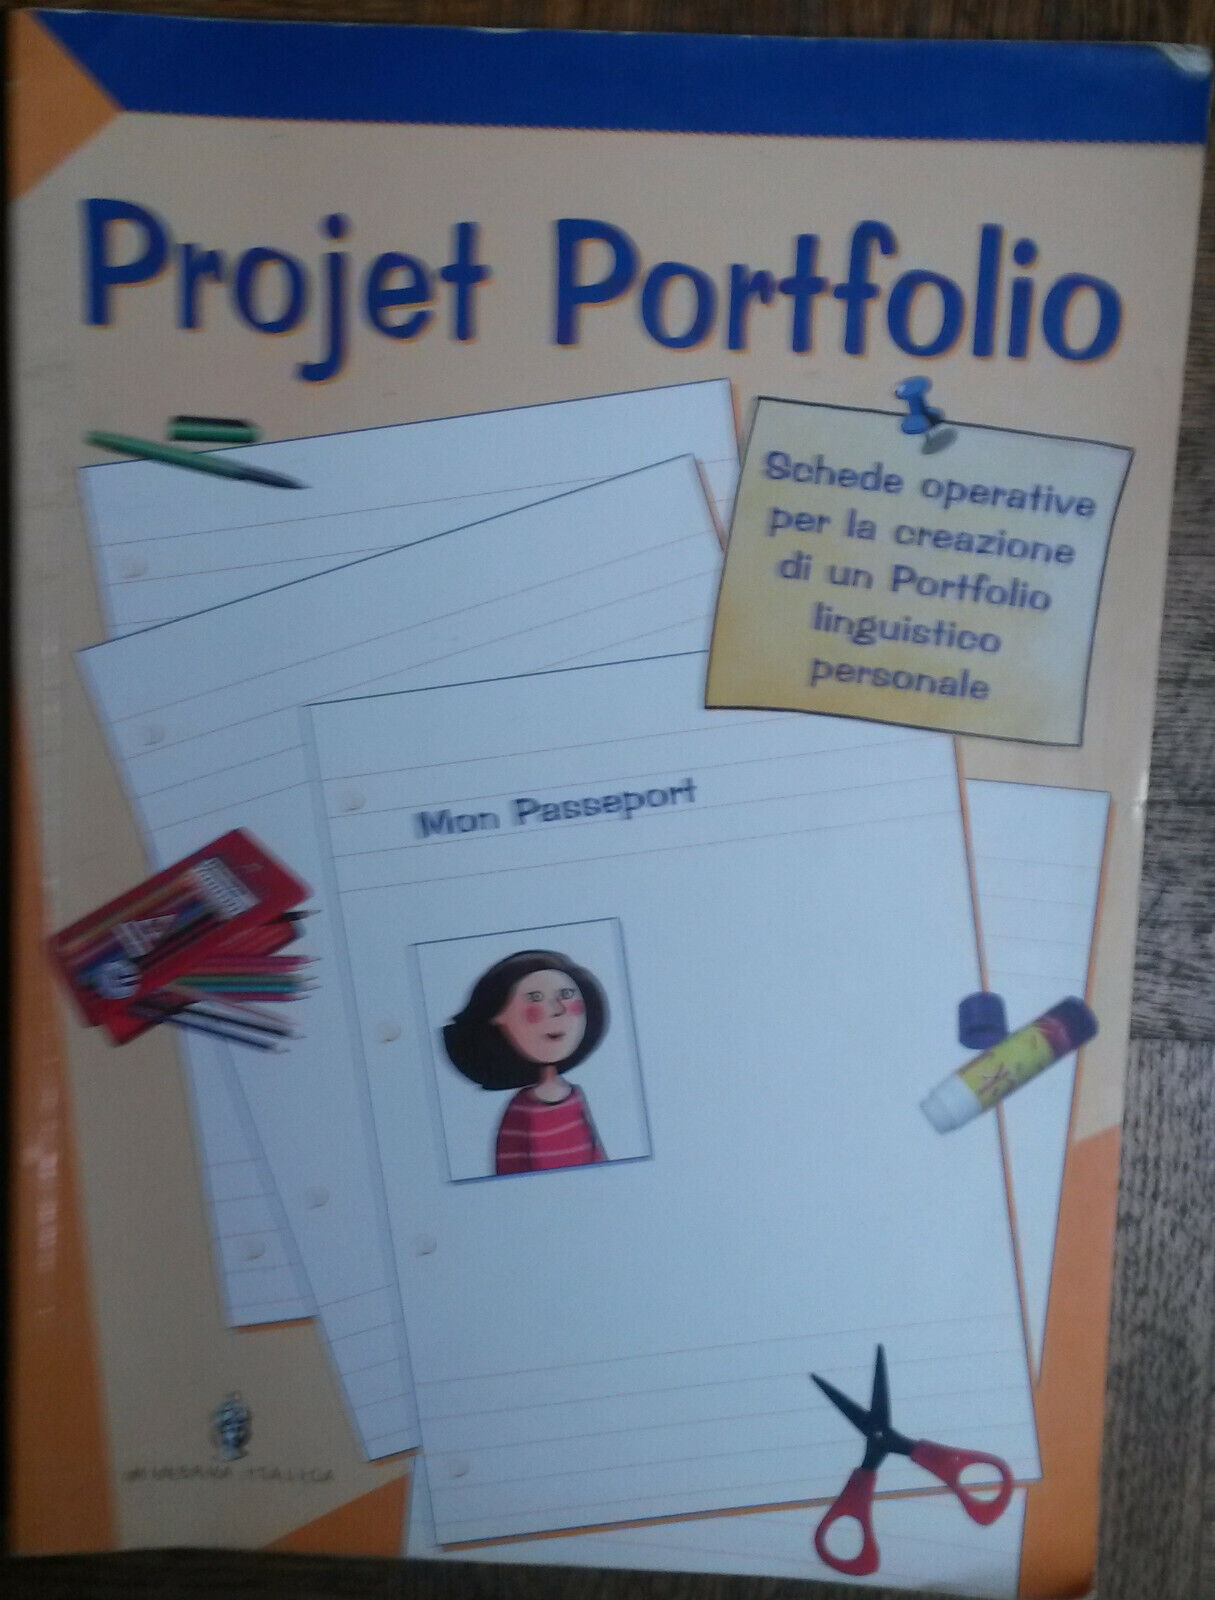 Project portfolio - AA.VV. - Minerva Italica,2008 -R